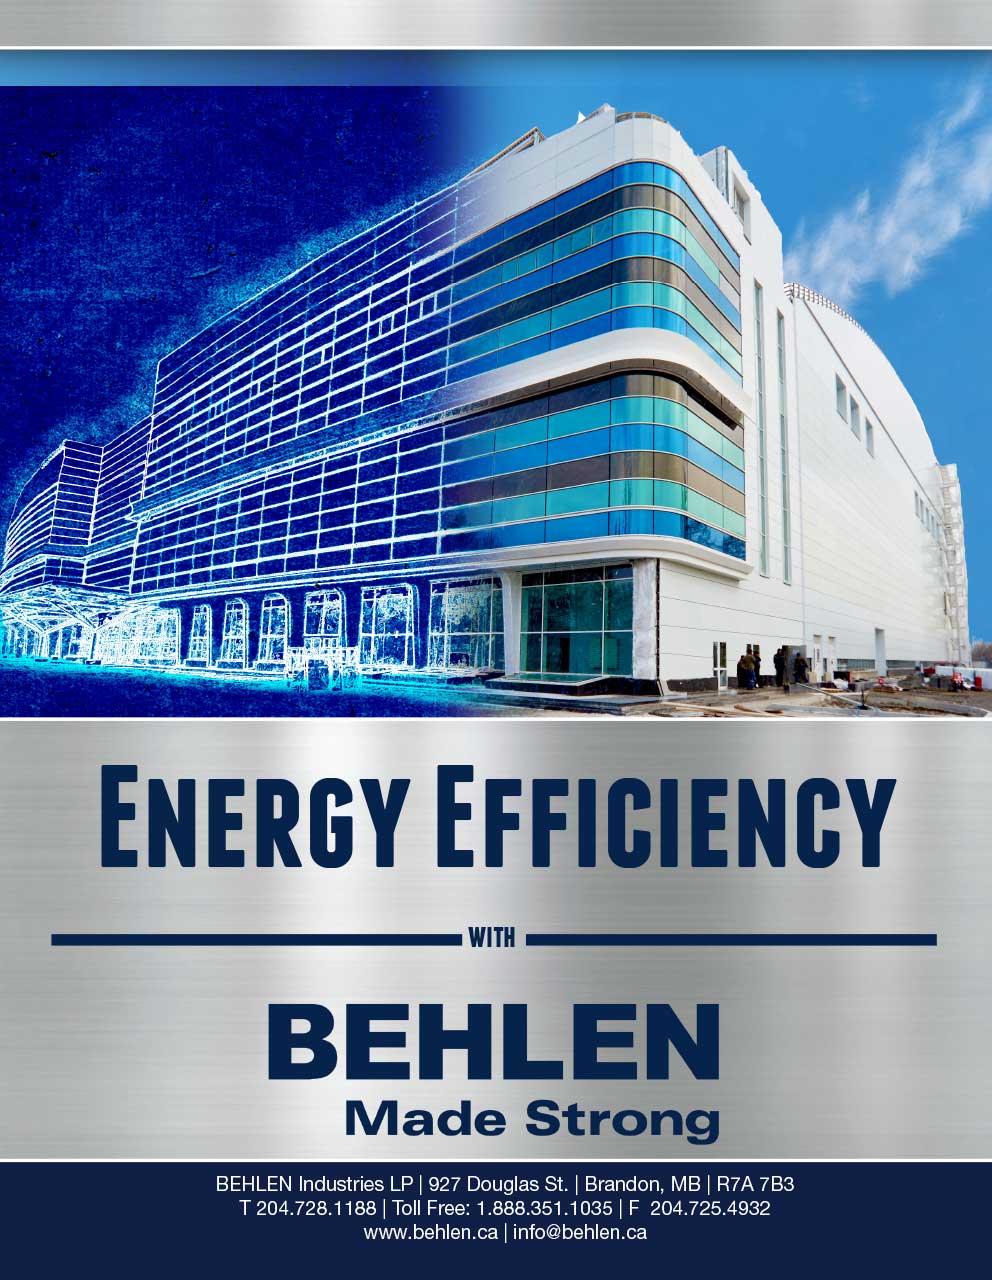 Behlen Industries - Energy Efficiency with BEHLEN